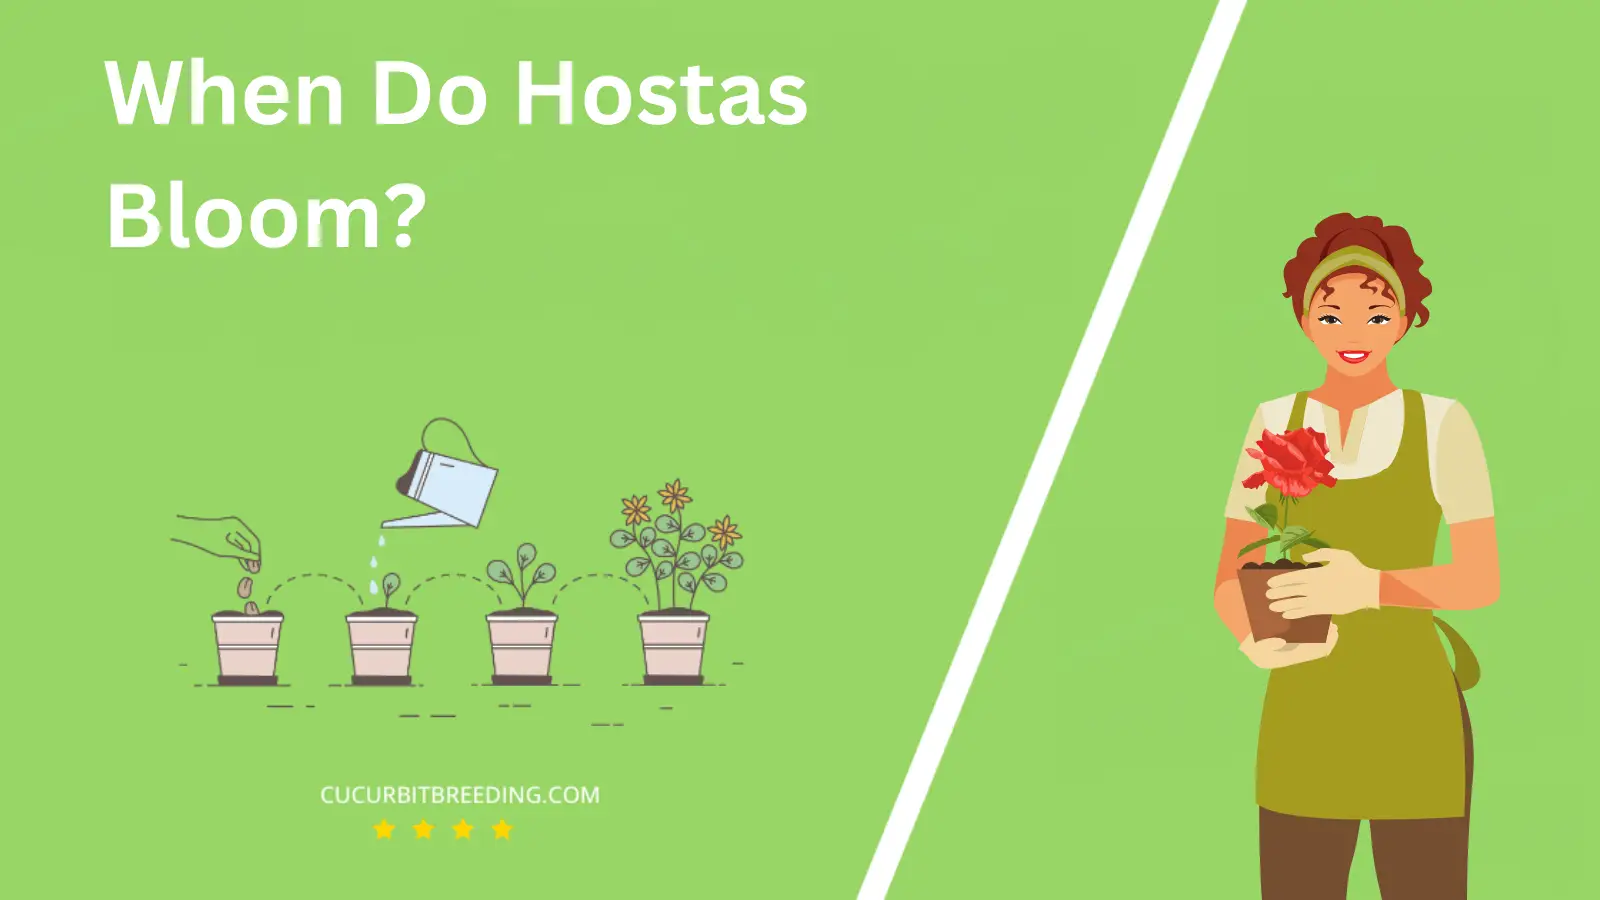 When Do Hostas Bloom?